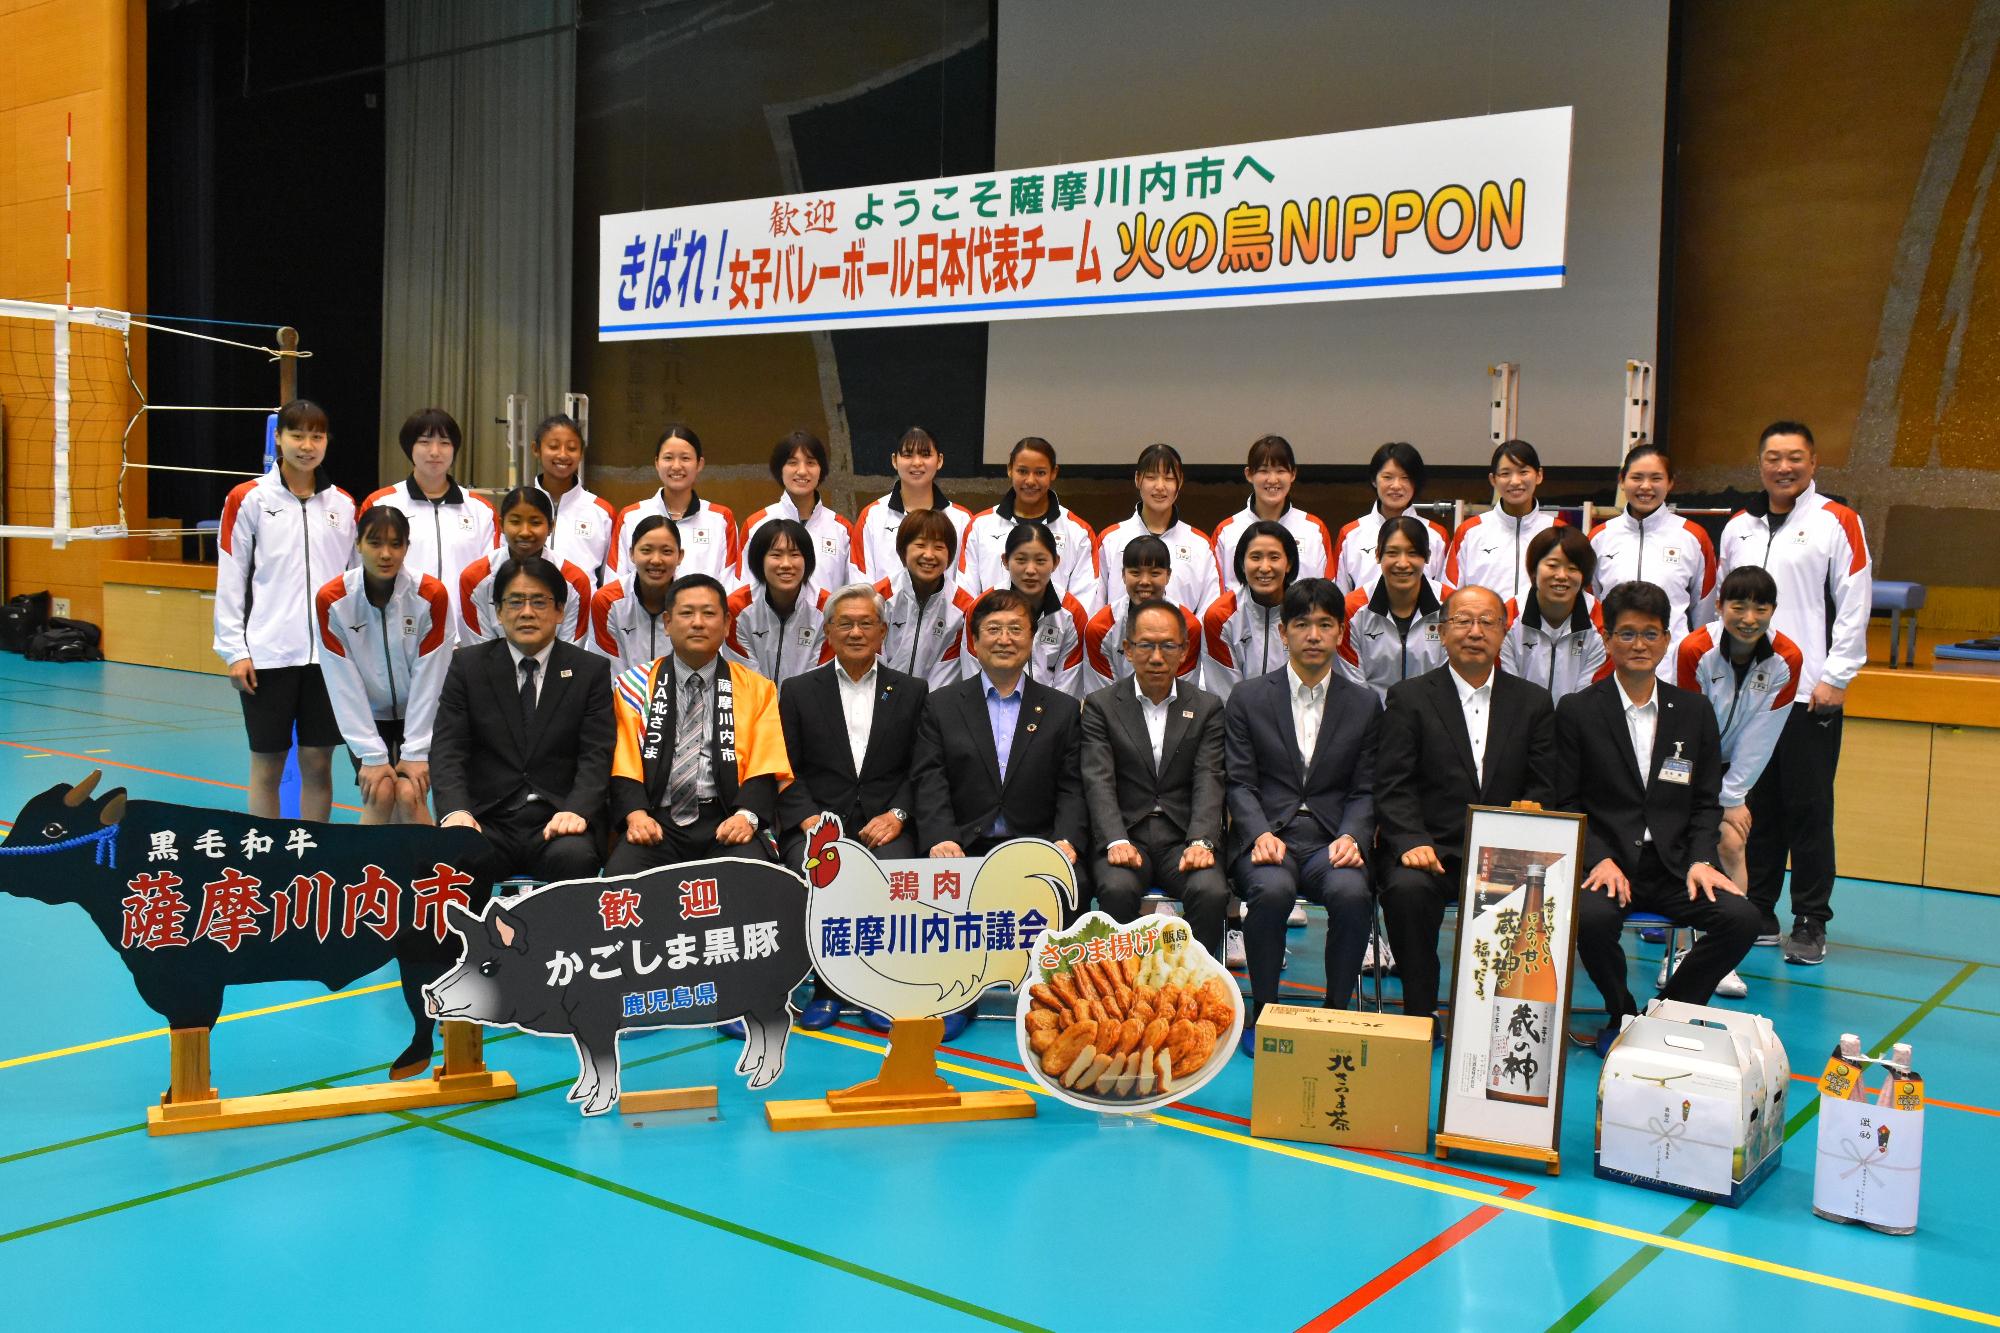 吊り看板の下、8種類の目録を前に市長と関係者と日本代表チームが収まっている記念写真